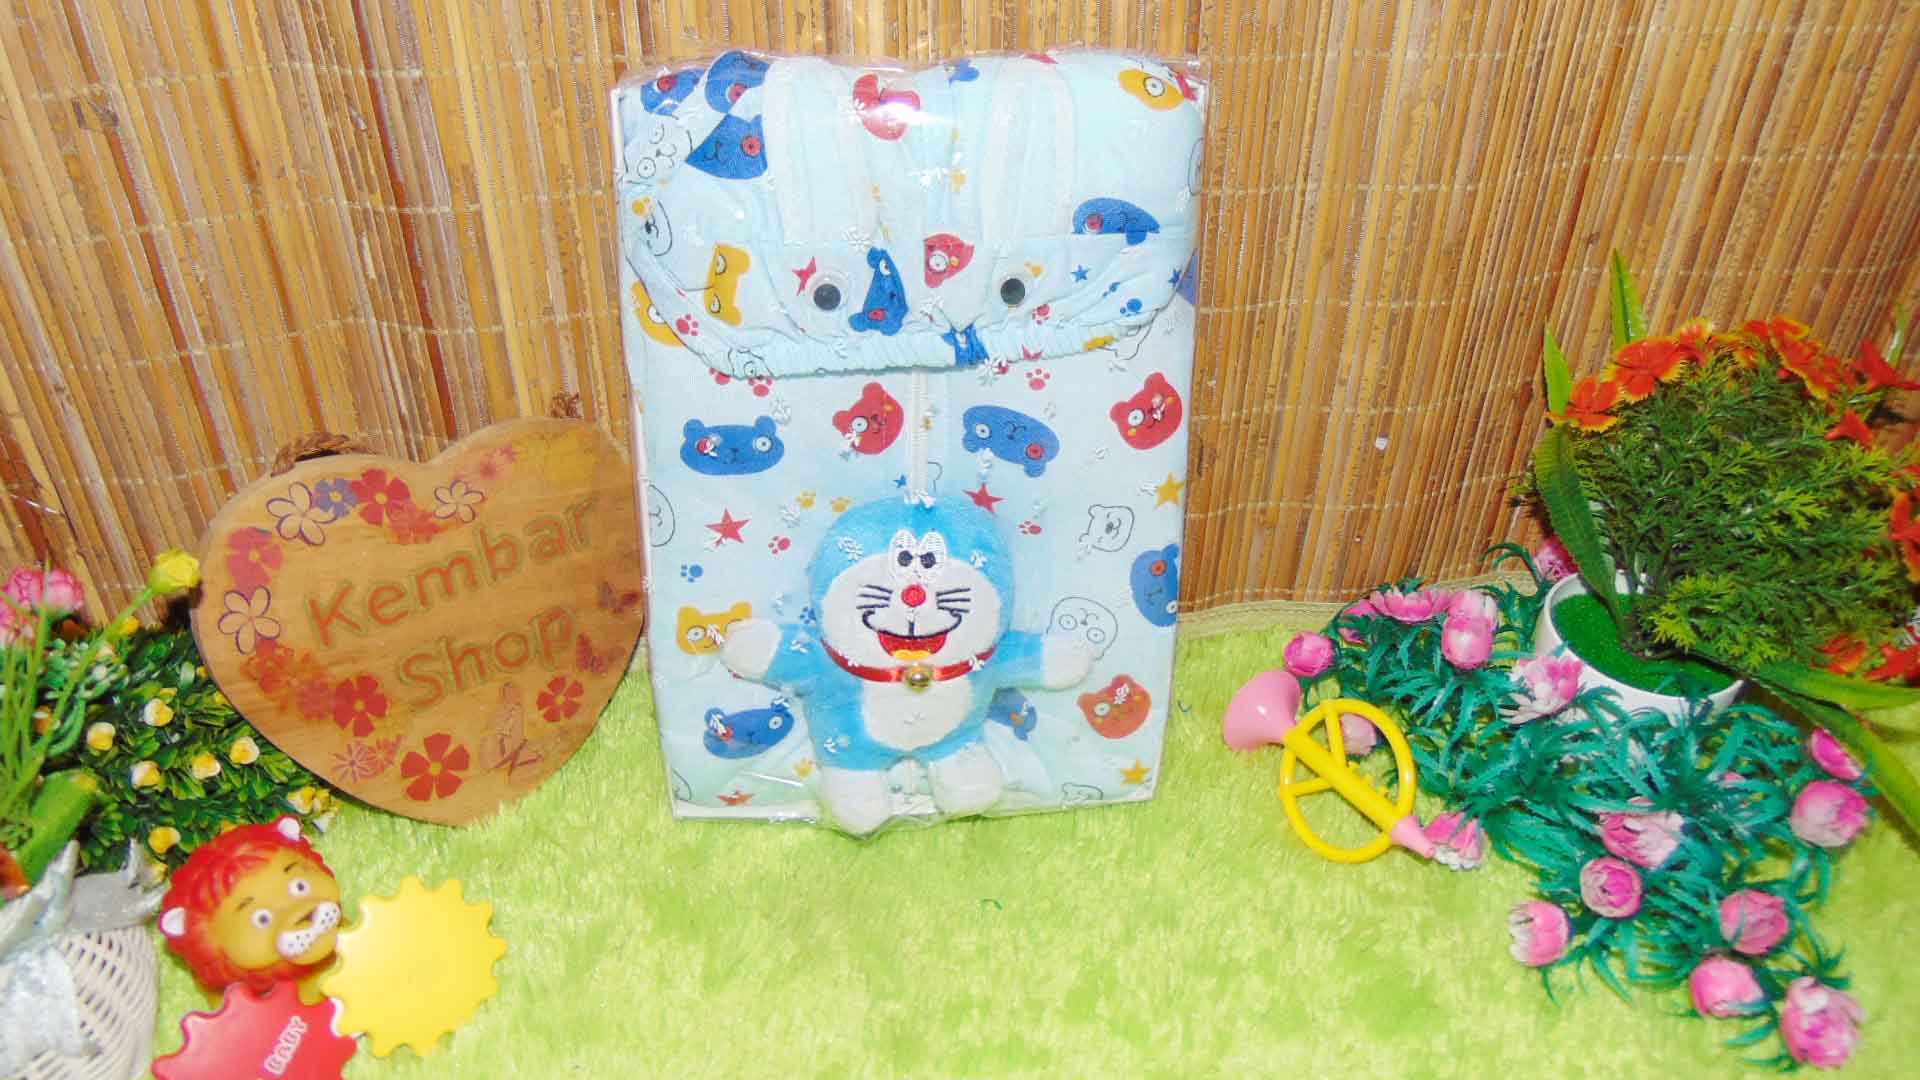 FREE KARTU UCAPAN paket kado lahiran bayi baby gift set box jaket plus boneka motif Baby Bear Beruang Aneka warna (2)